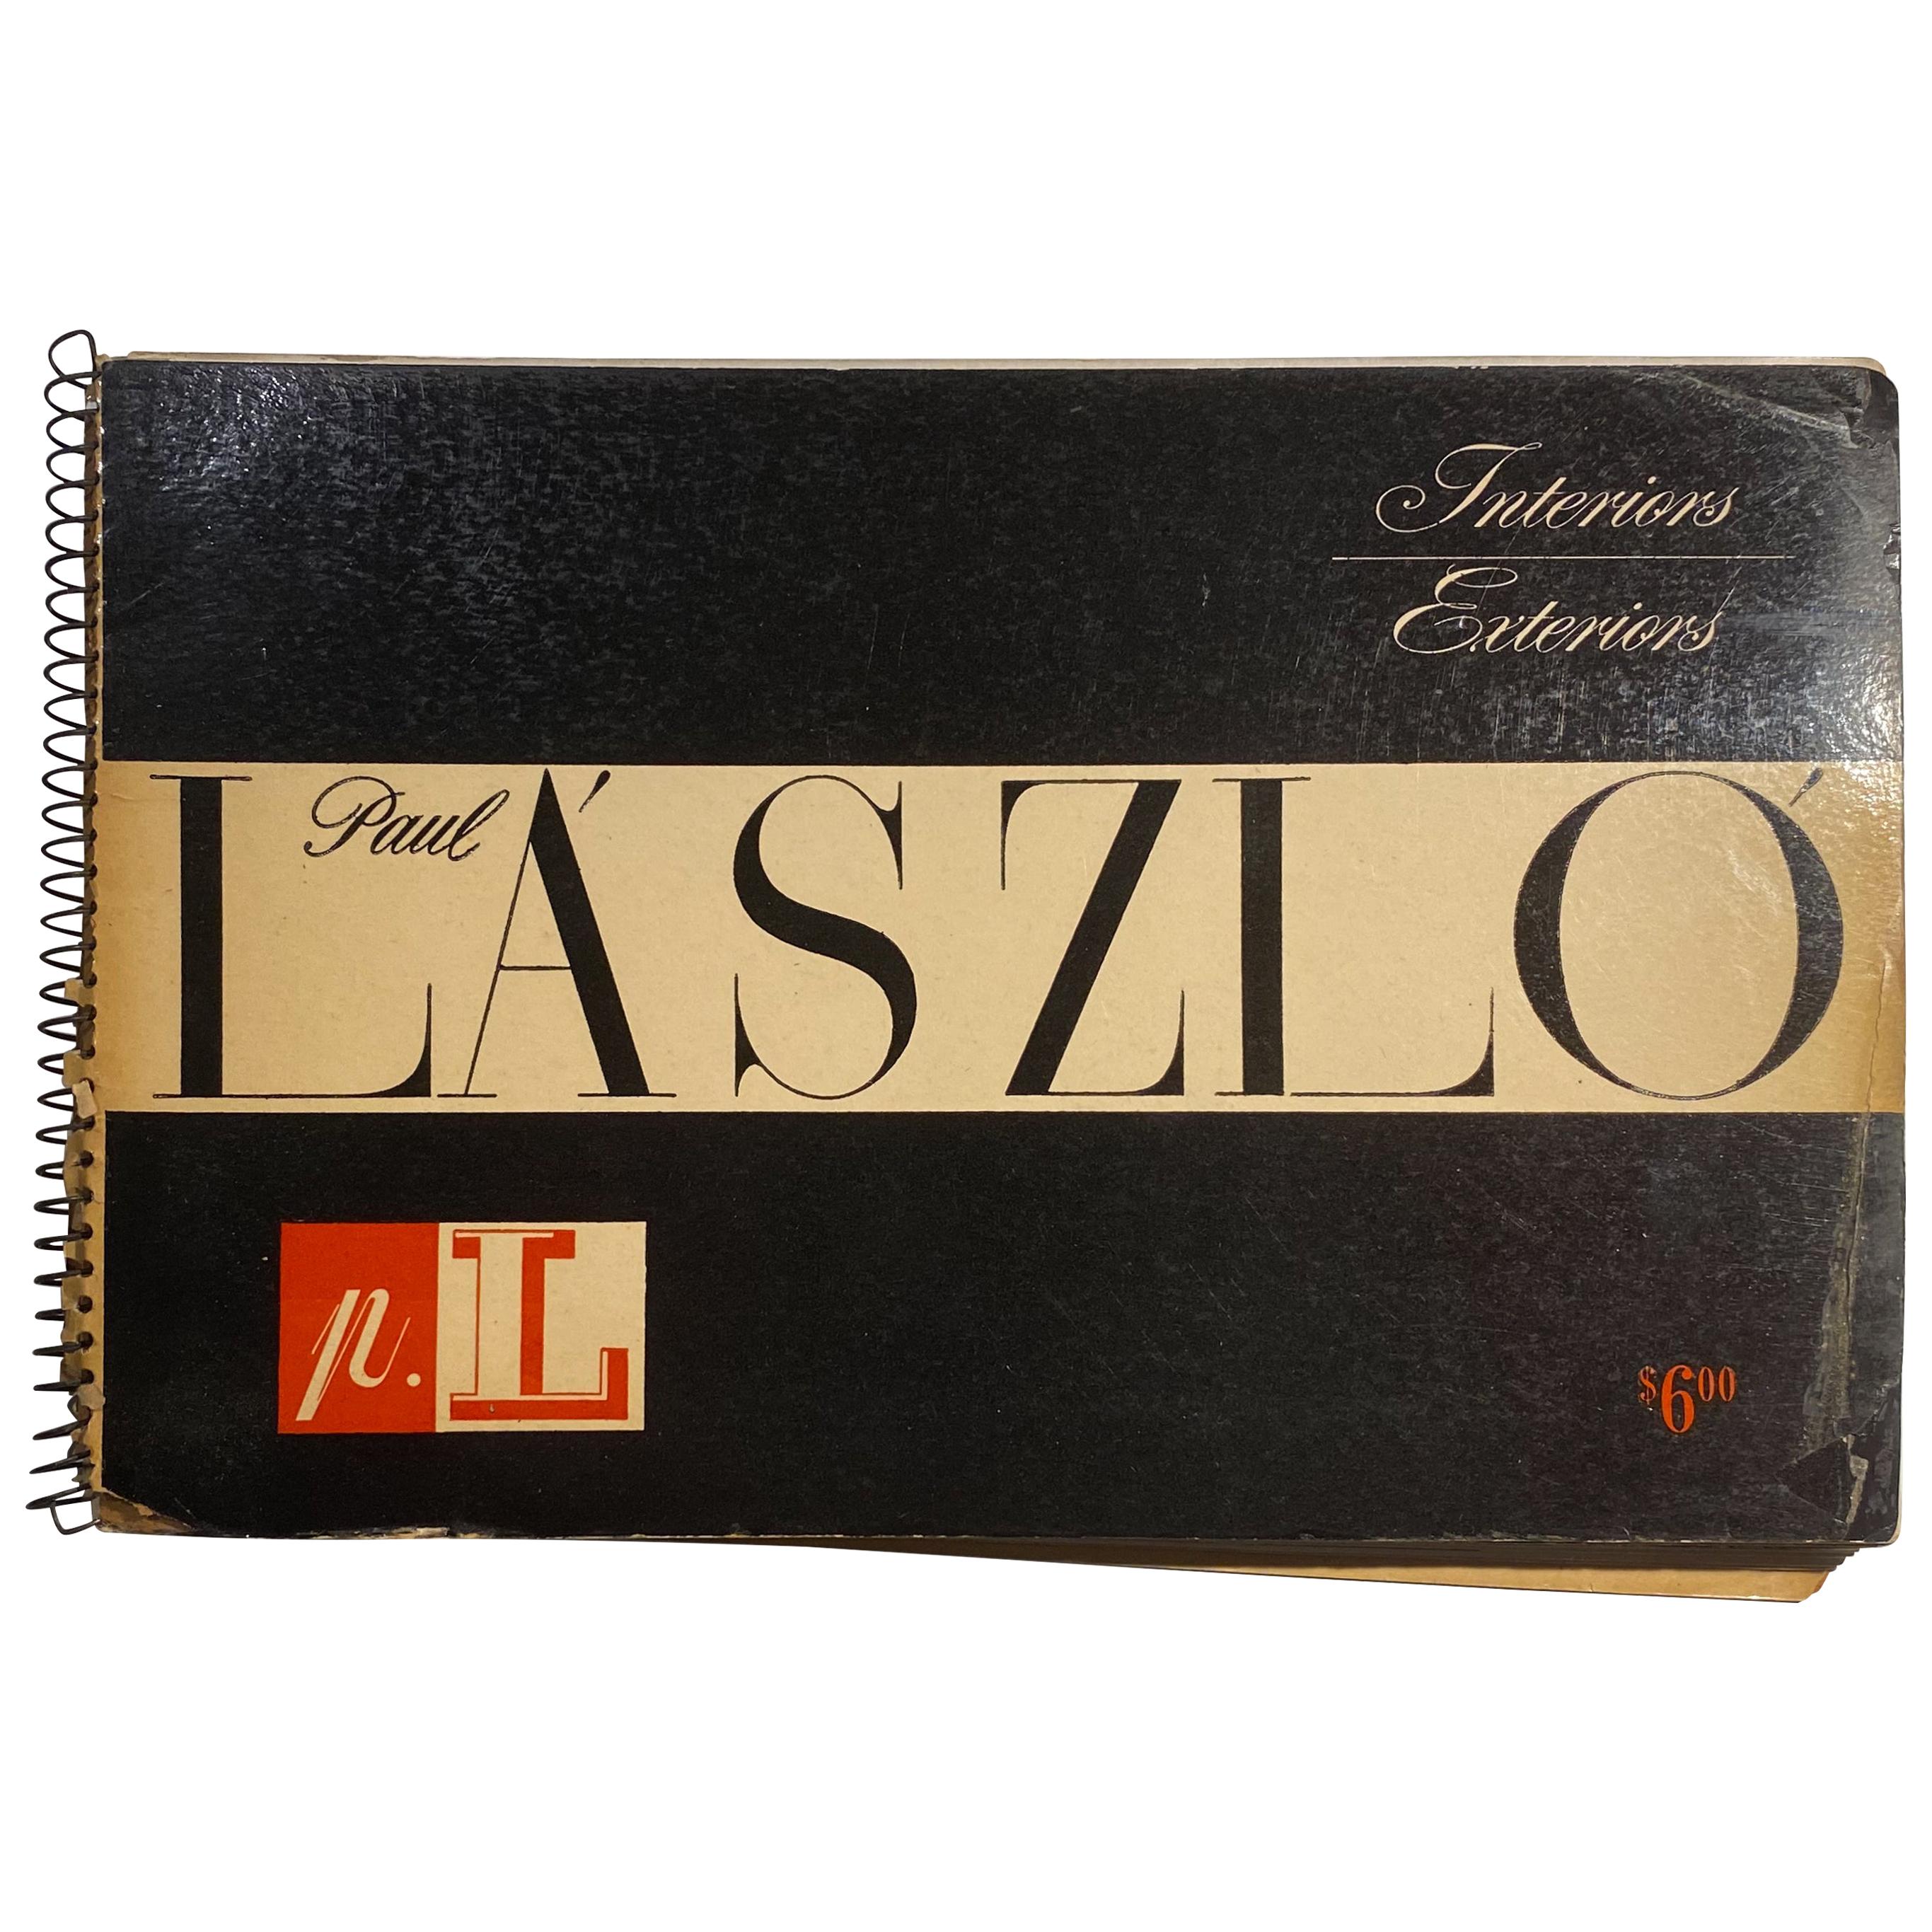 Catalog von Paul Laszlo aus dem Jahr 1947